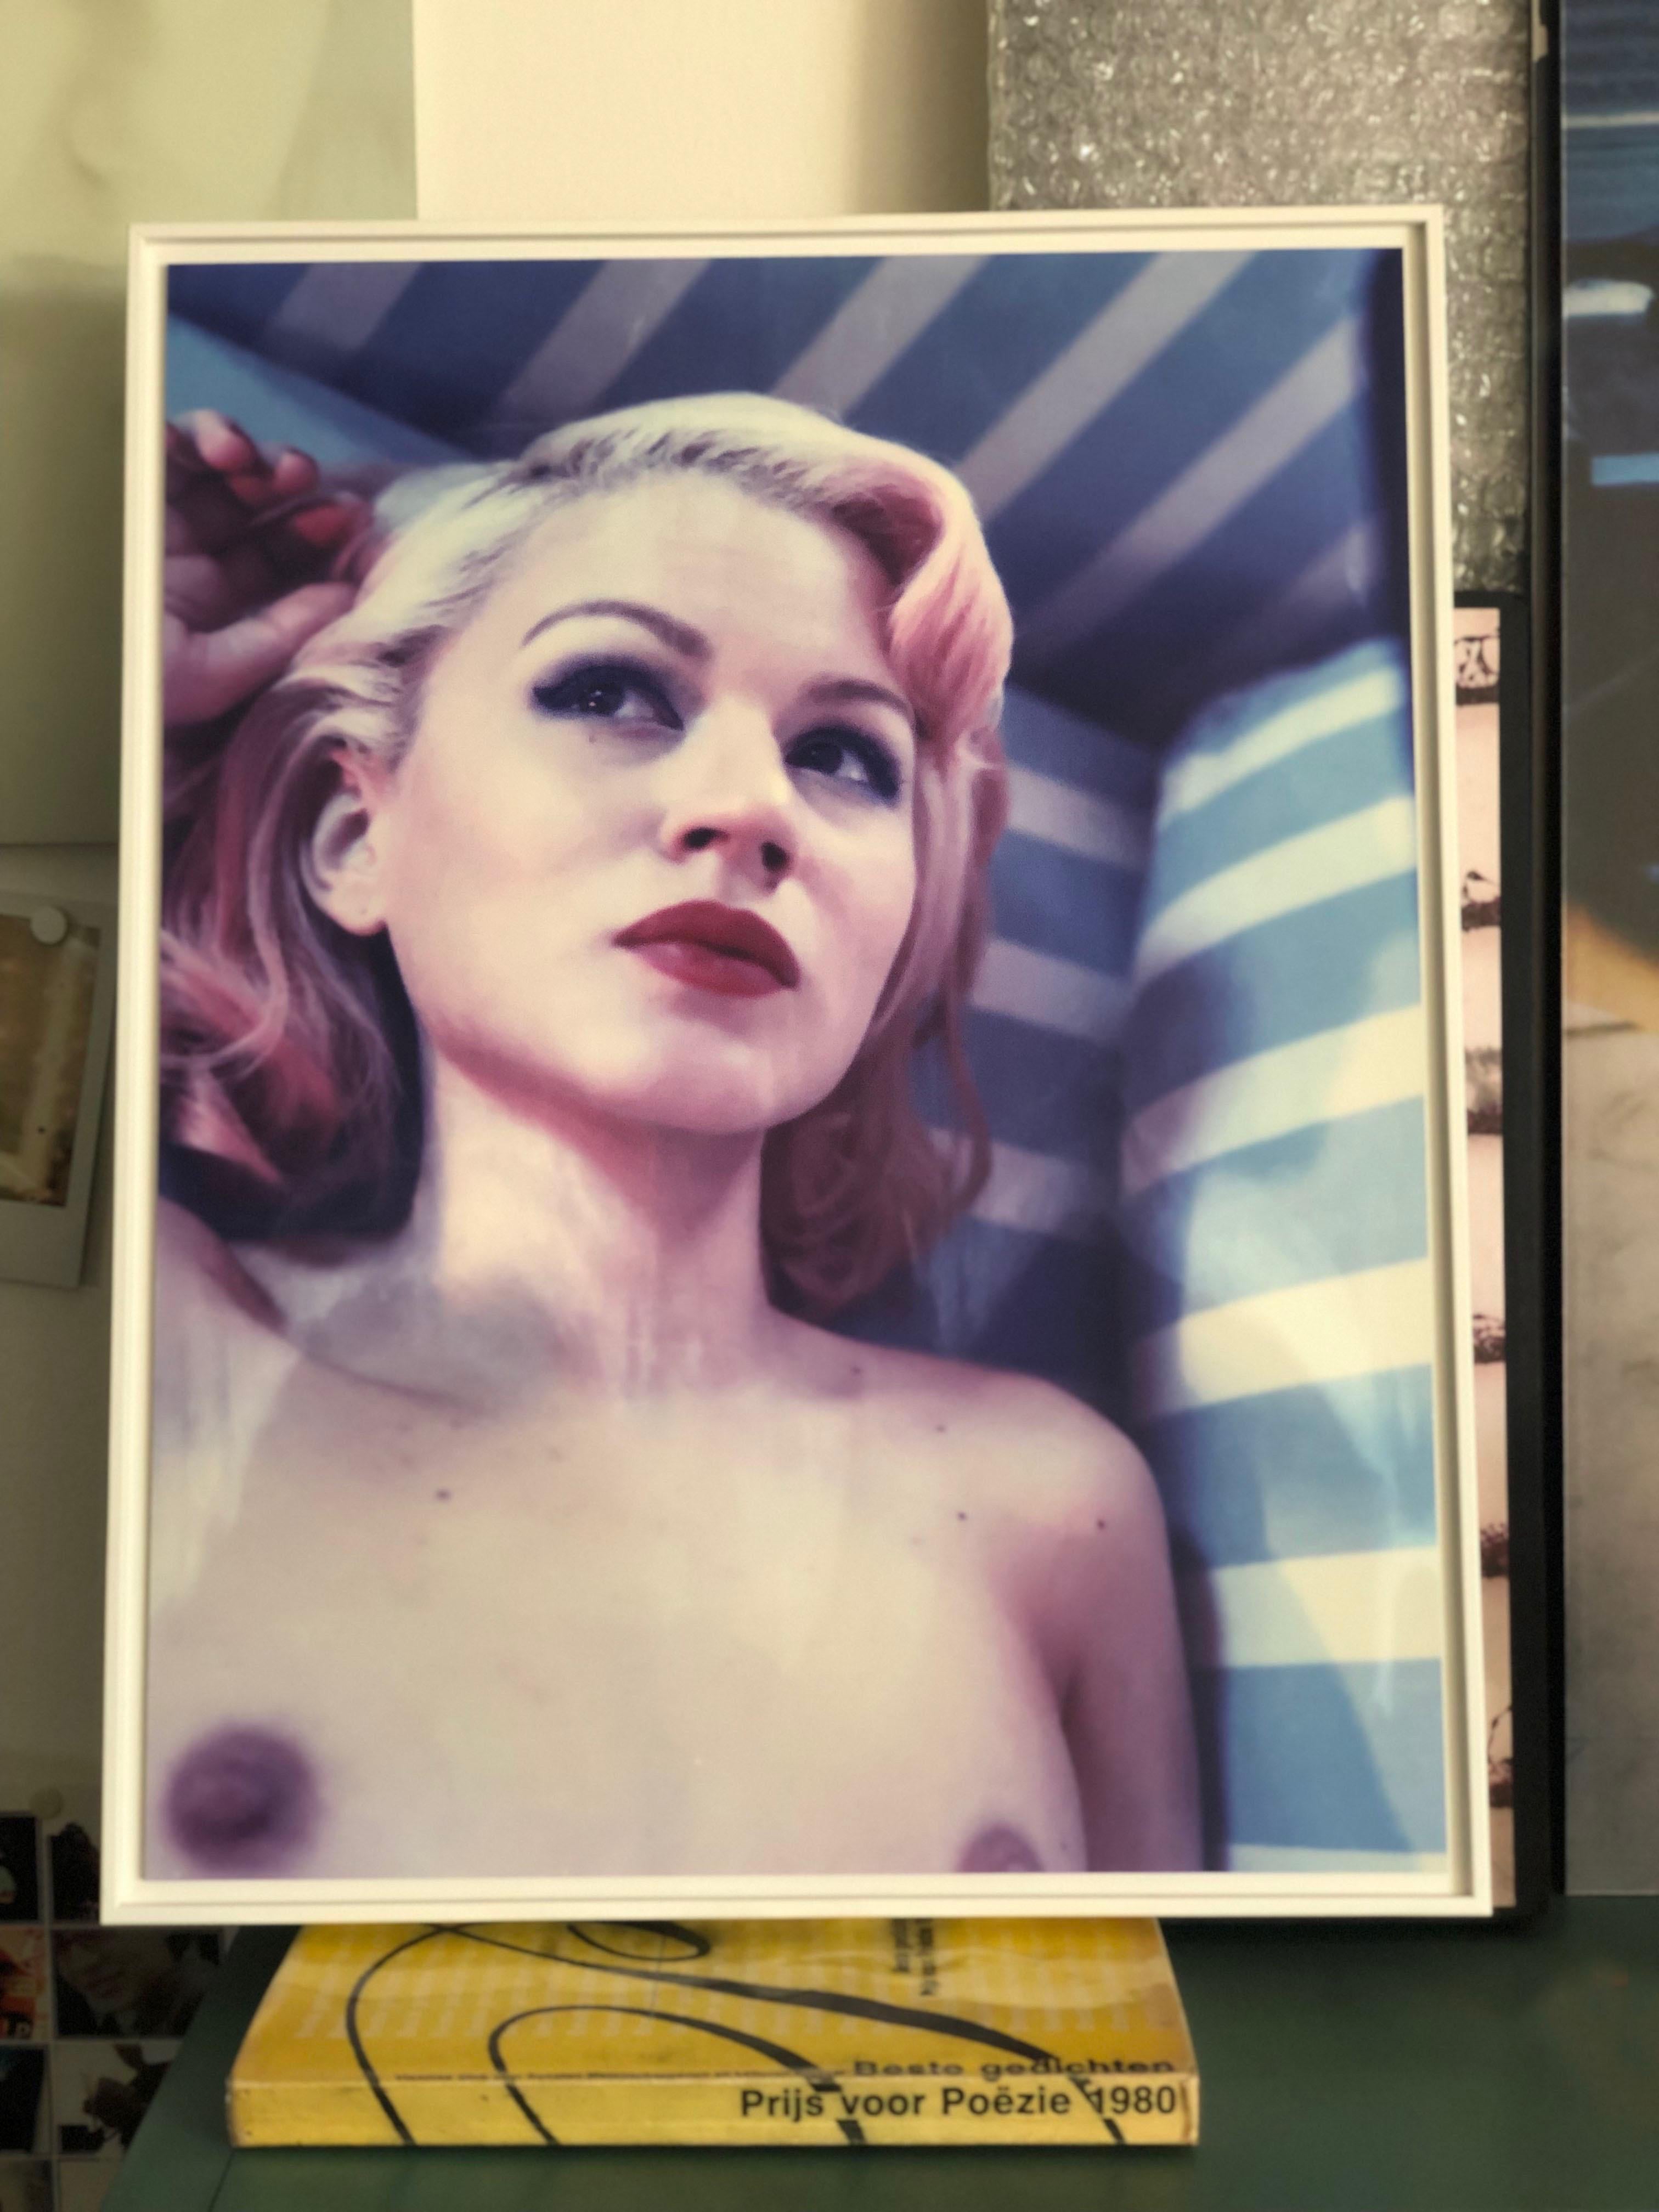 Miss Eris #07 ( Les Foxy Femmes) - 21st Century, Women, Nude, Polaroid, Contempo - Photograph by Carmen de Vos